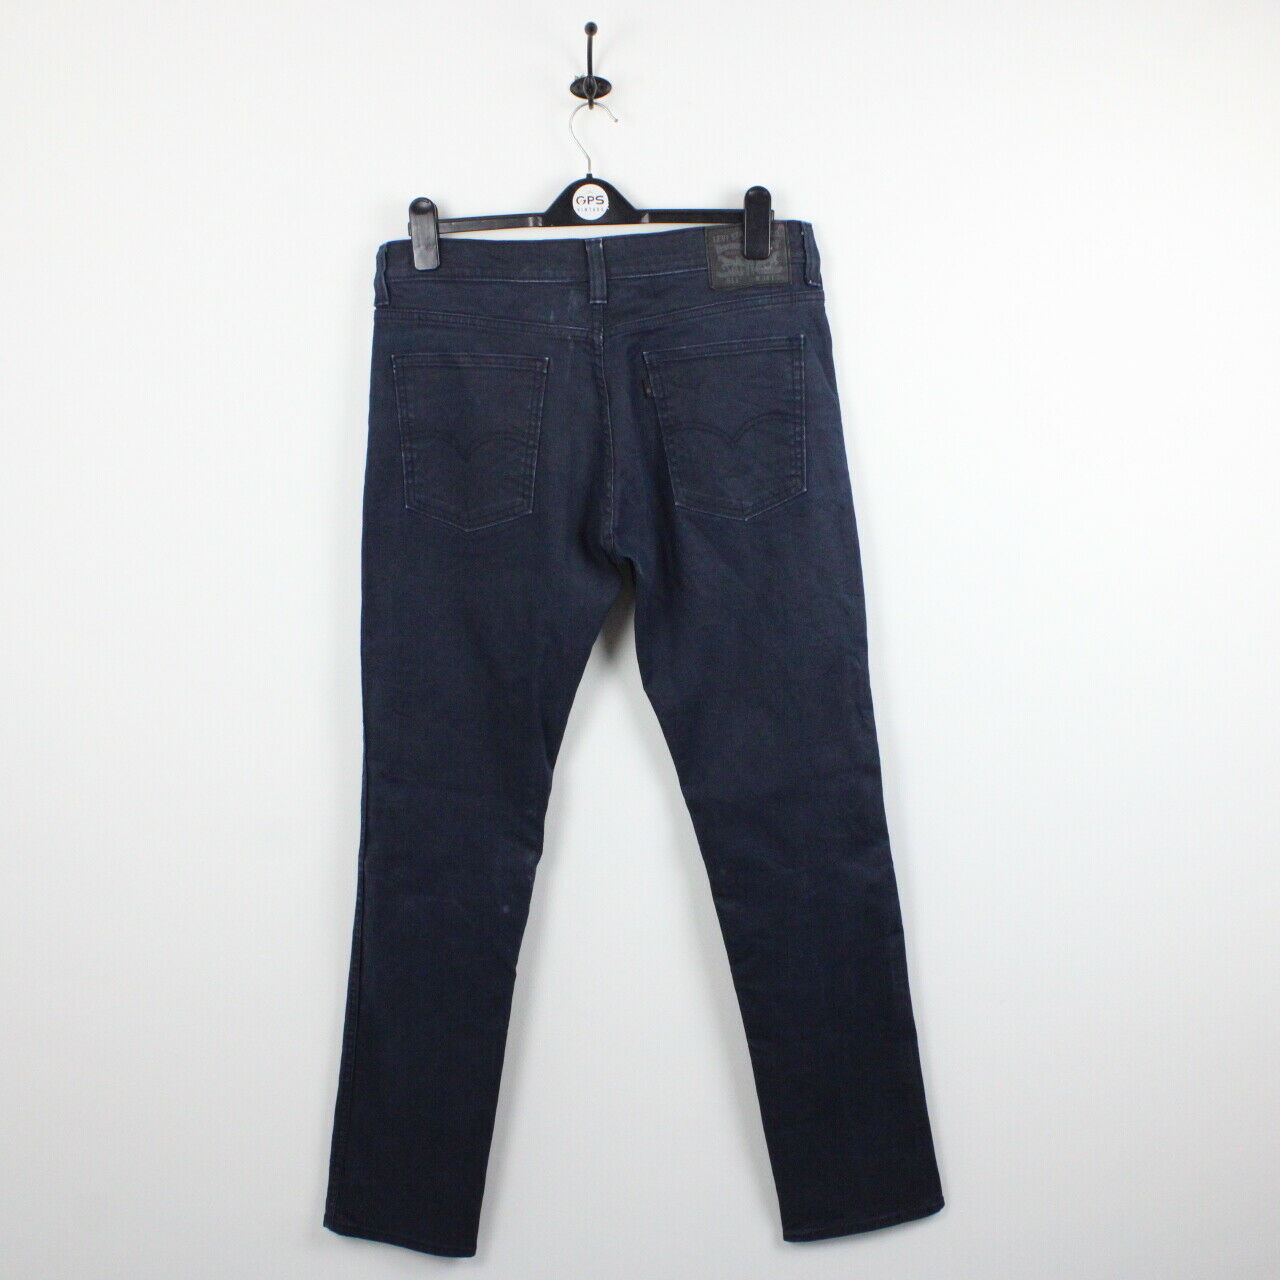 LEVIS 511 Jeans Dark Blue | W35 L34